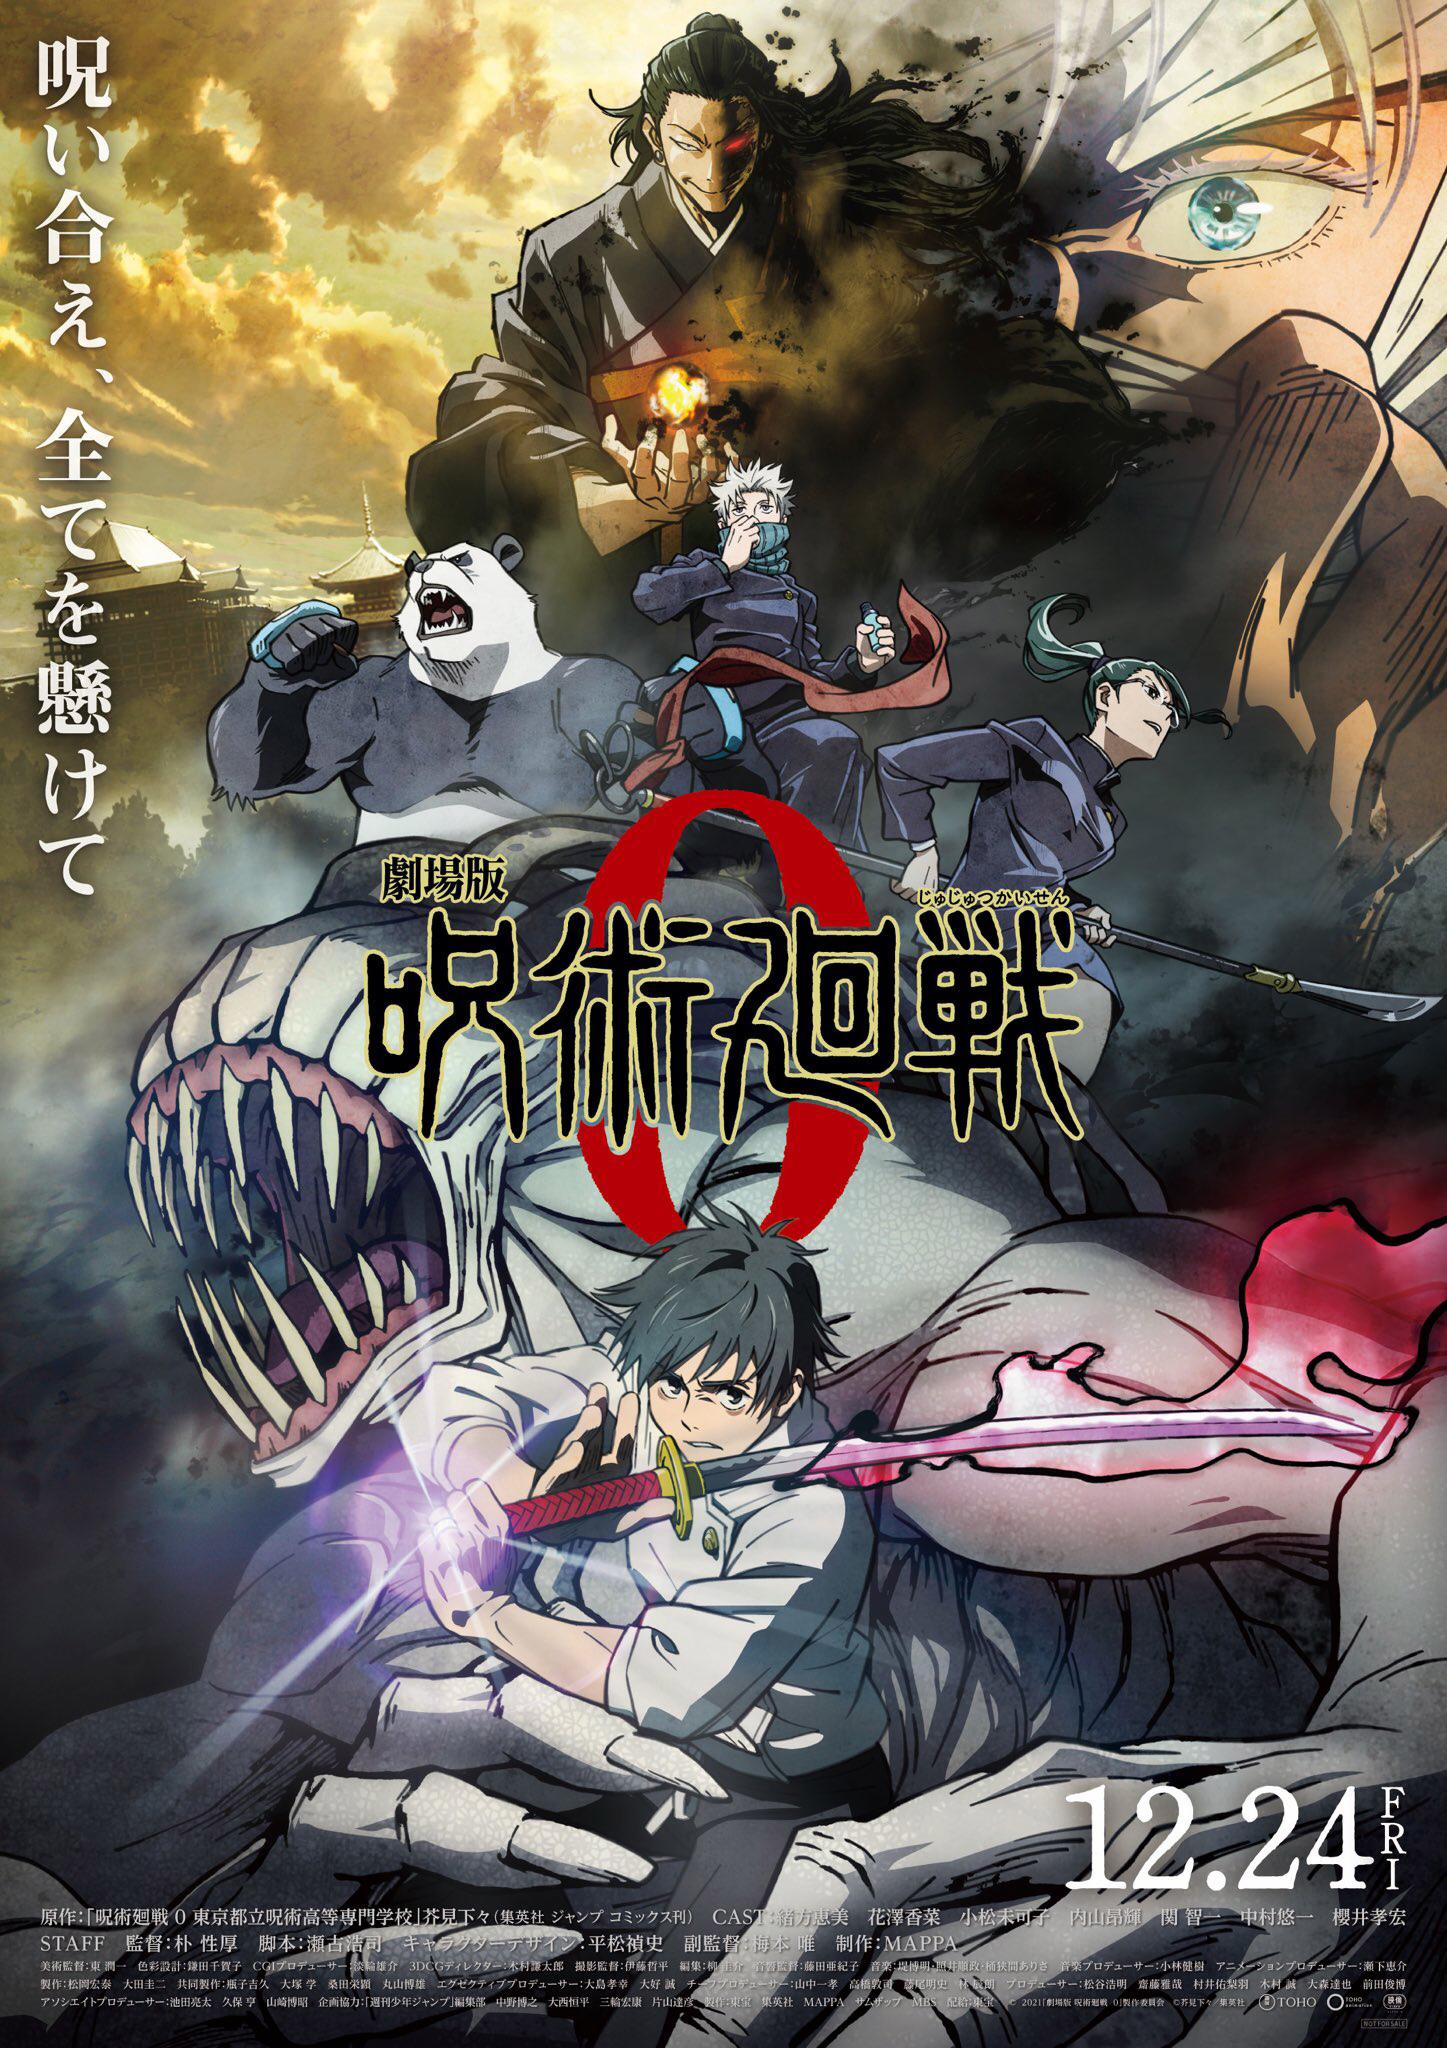 Jujutsu Kaisen 0: The Movie Movie Review | Jujutsu Kaisen 0: The Movie Filmy Rating 2022